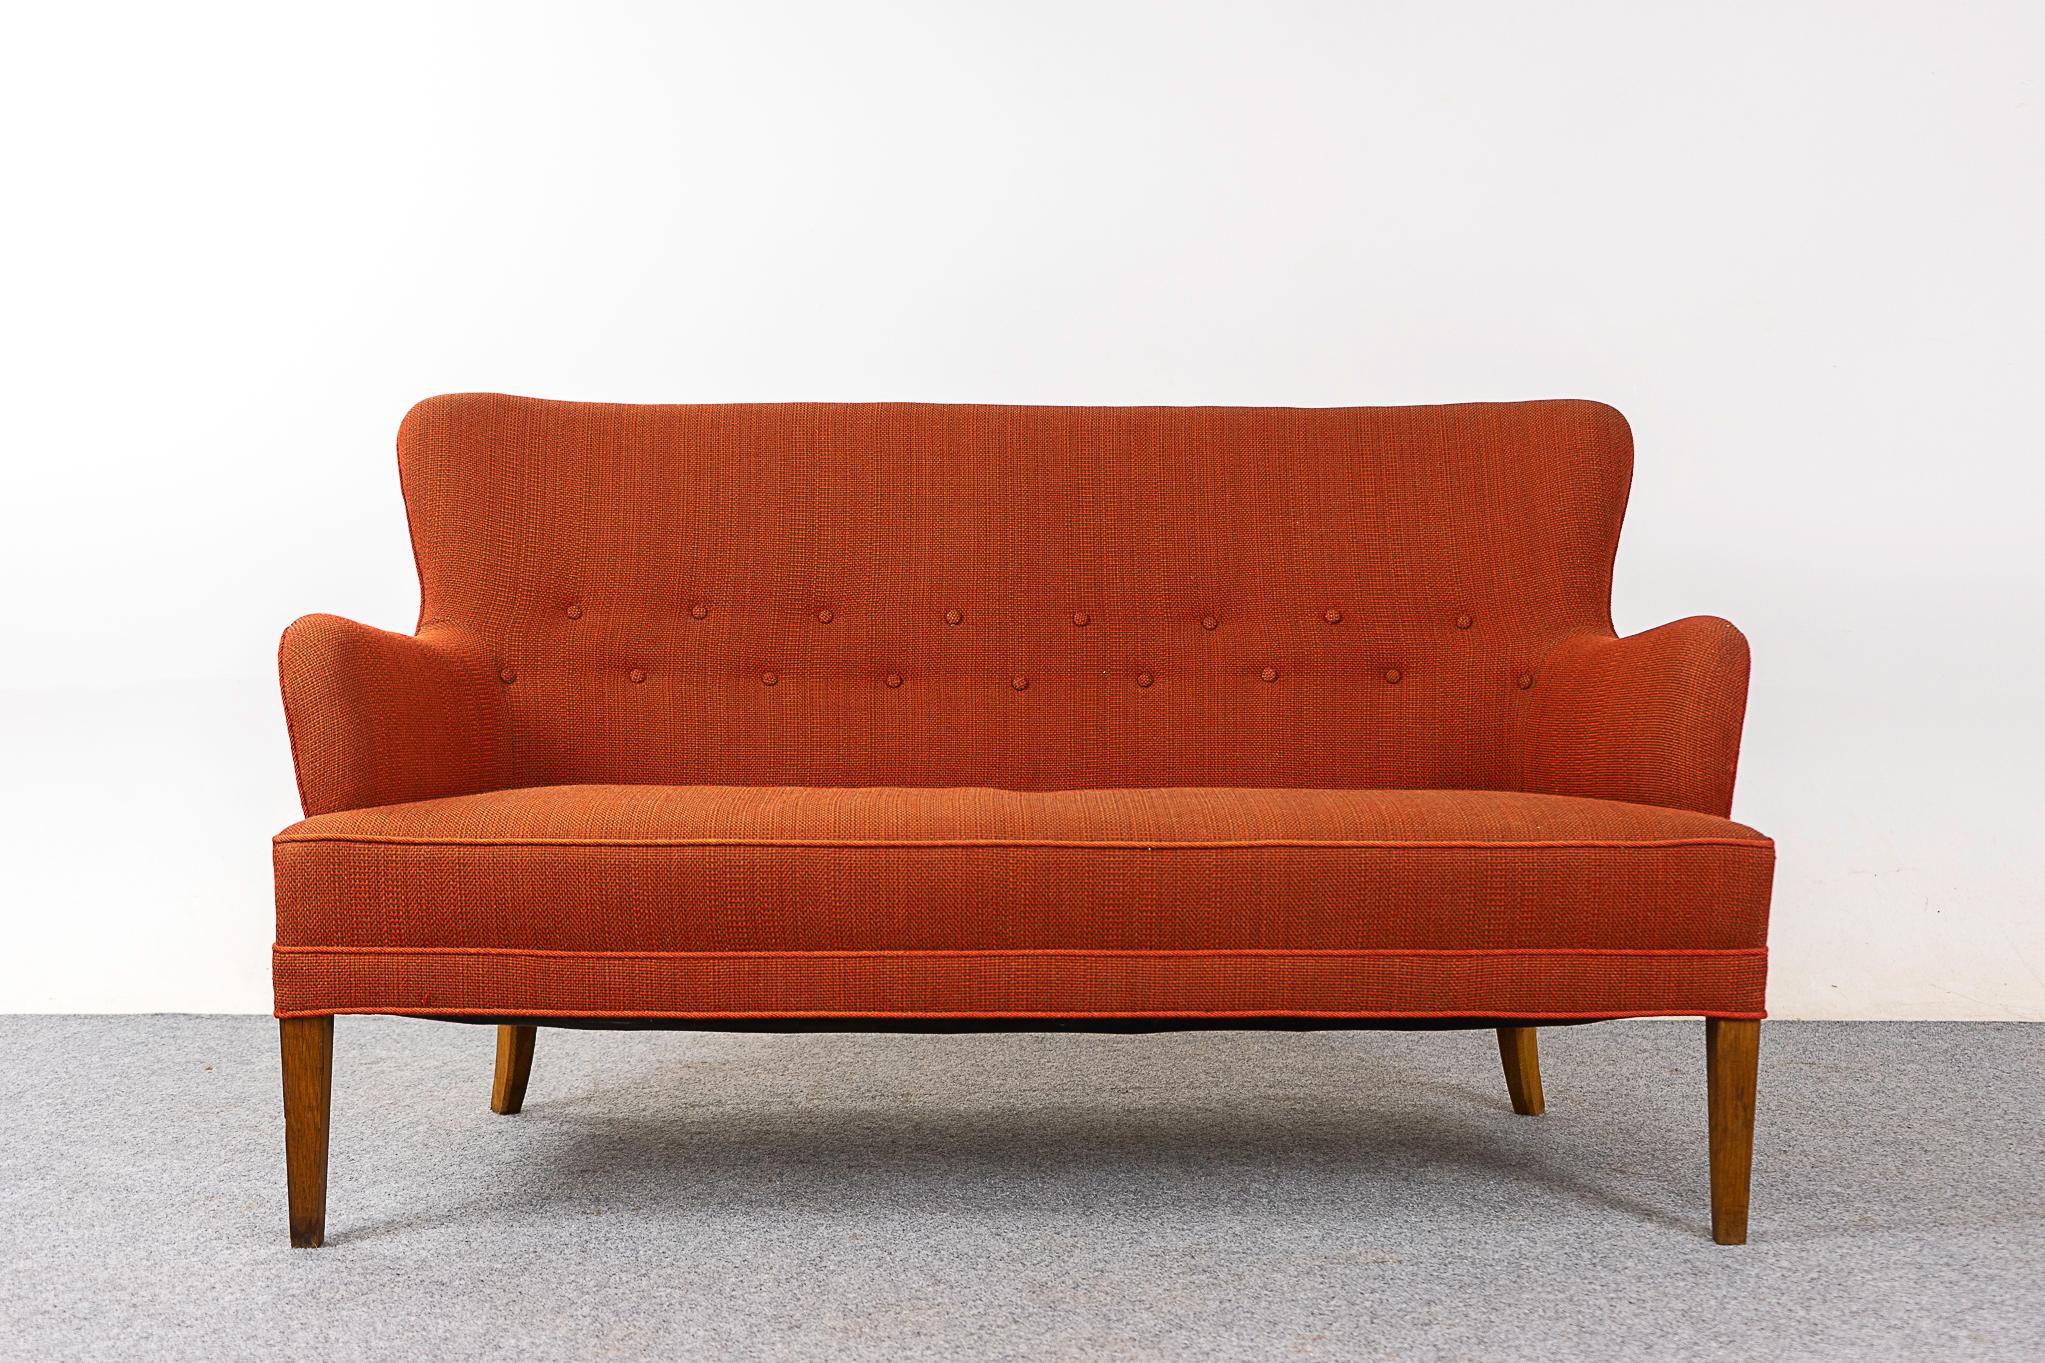 Causeuse moderne danoise, vers les années 1960. Charmante tapisserie d'origine orange brûlé avec dossier touffeté. Encombrement réduit, une solution d'assise parfaite pour les citadins dans des lofts ou des condos douillets. Pieds fuselés en bois